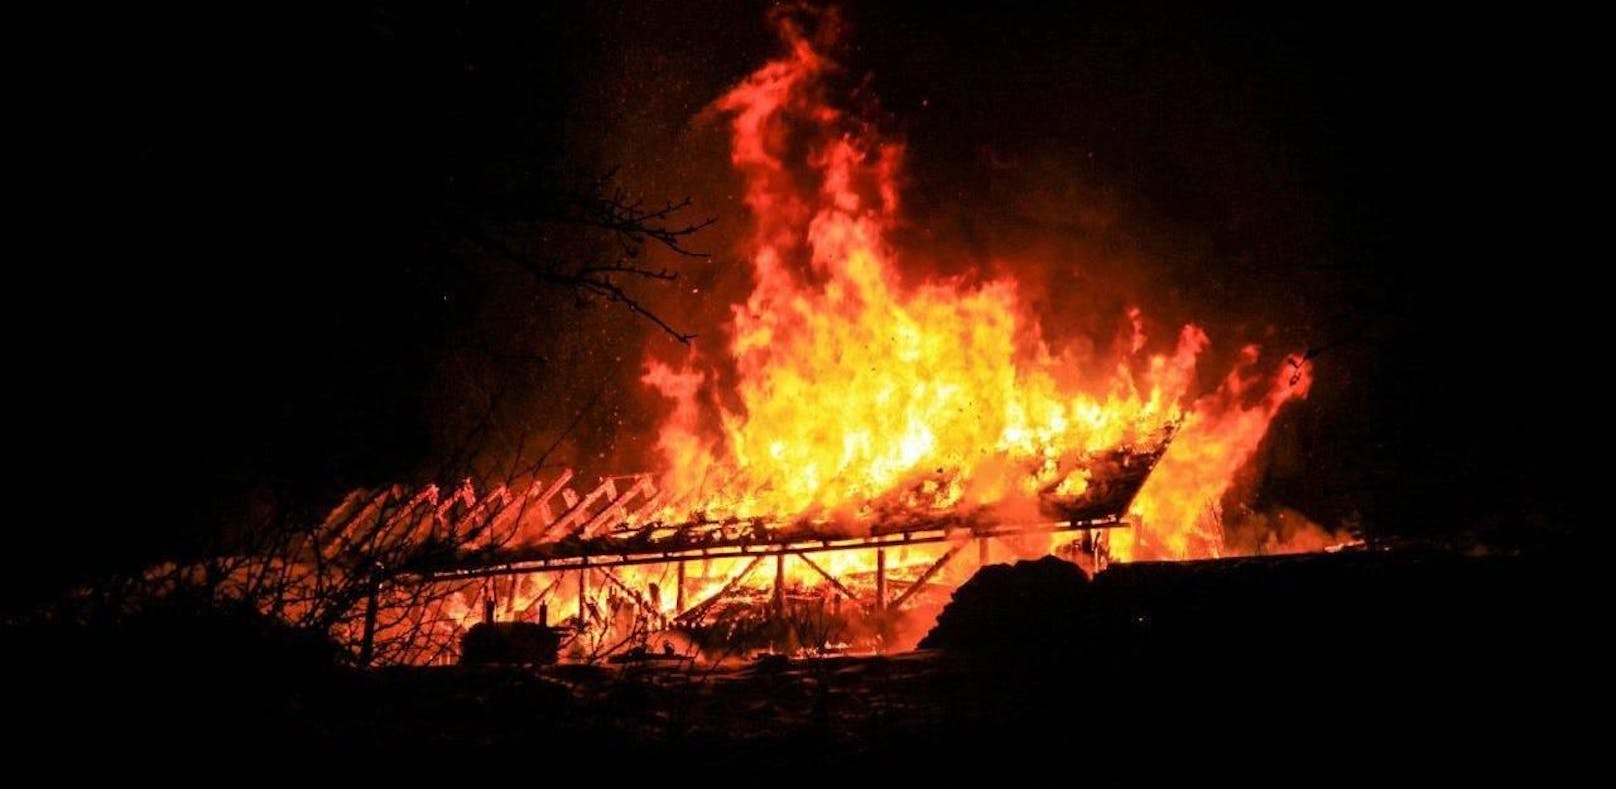 Feuerinferno: Halle brannte völlig nieder